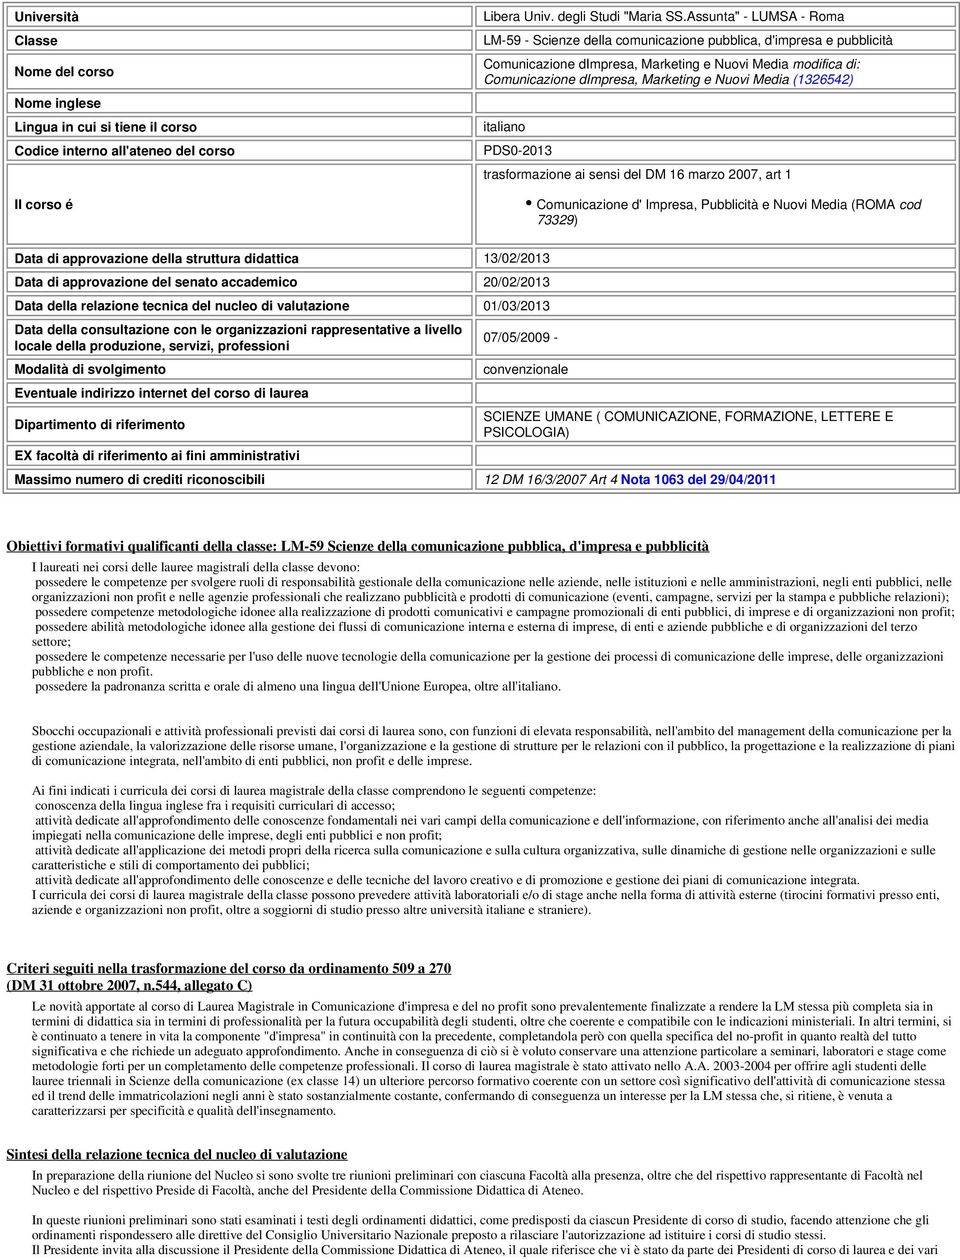 Media (1326542) italiano PDS0-2013 trasformazione ai sensi del DM 16 marzo 2007, art 1 Comunicazione d' Impresa, Pubblicità e Nuovi Media (ROMA cod 73329) Data di approvazione della struttura